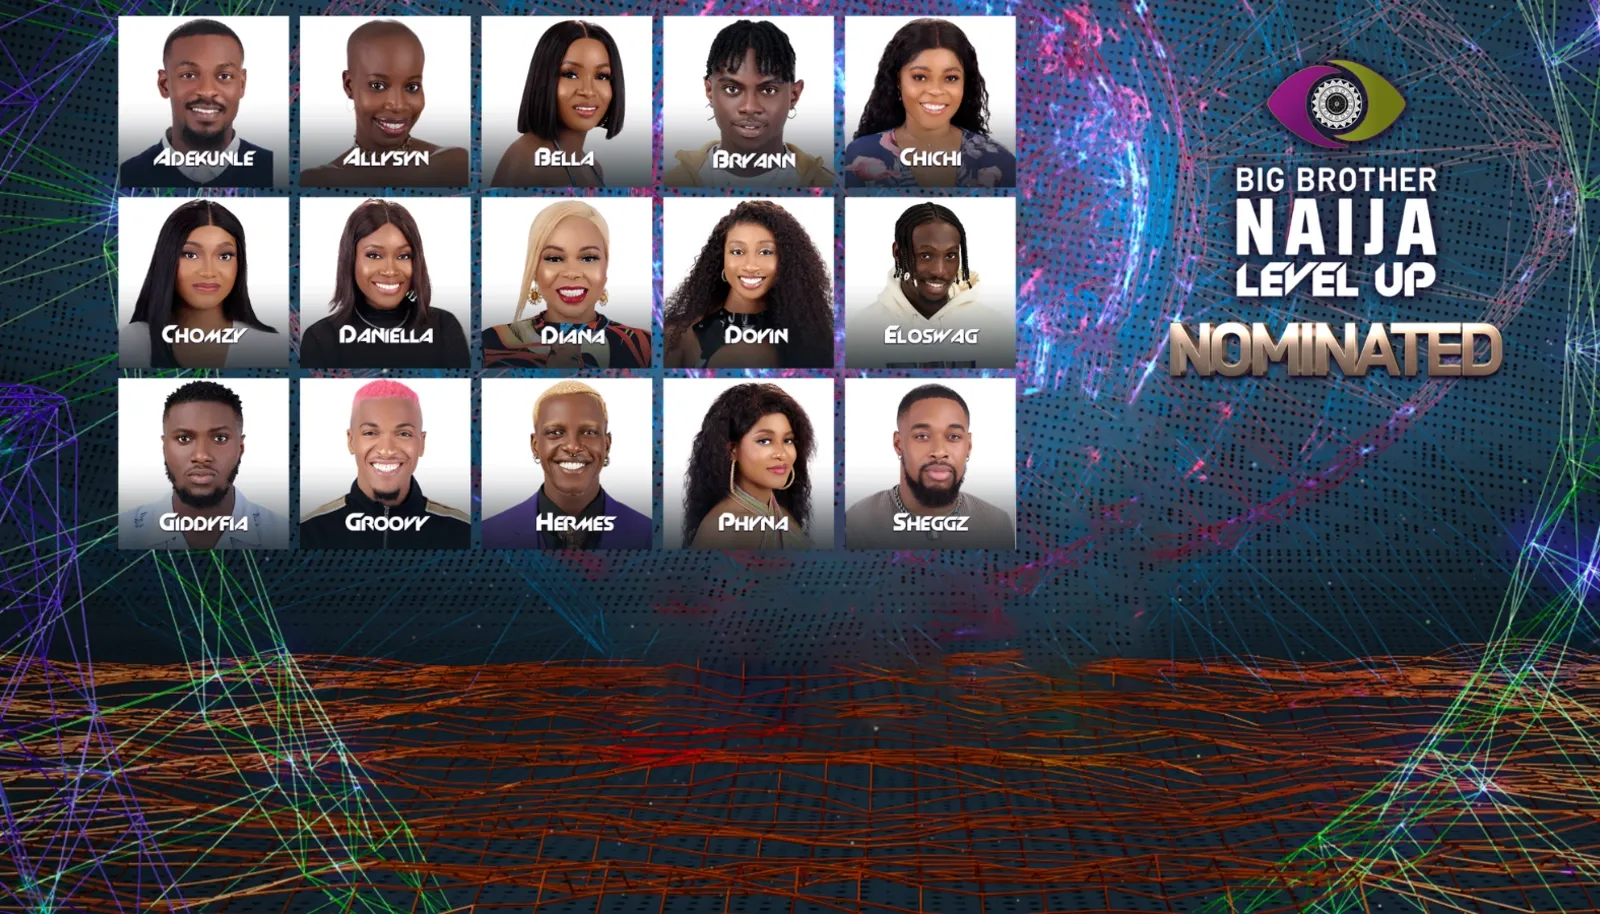 Big Brother Naija Week 6 Nomination Result